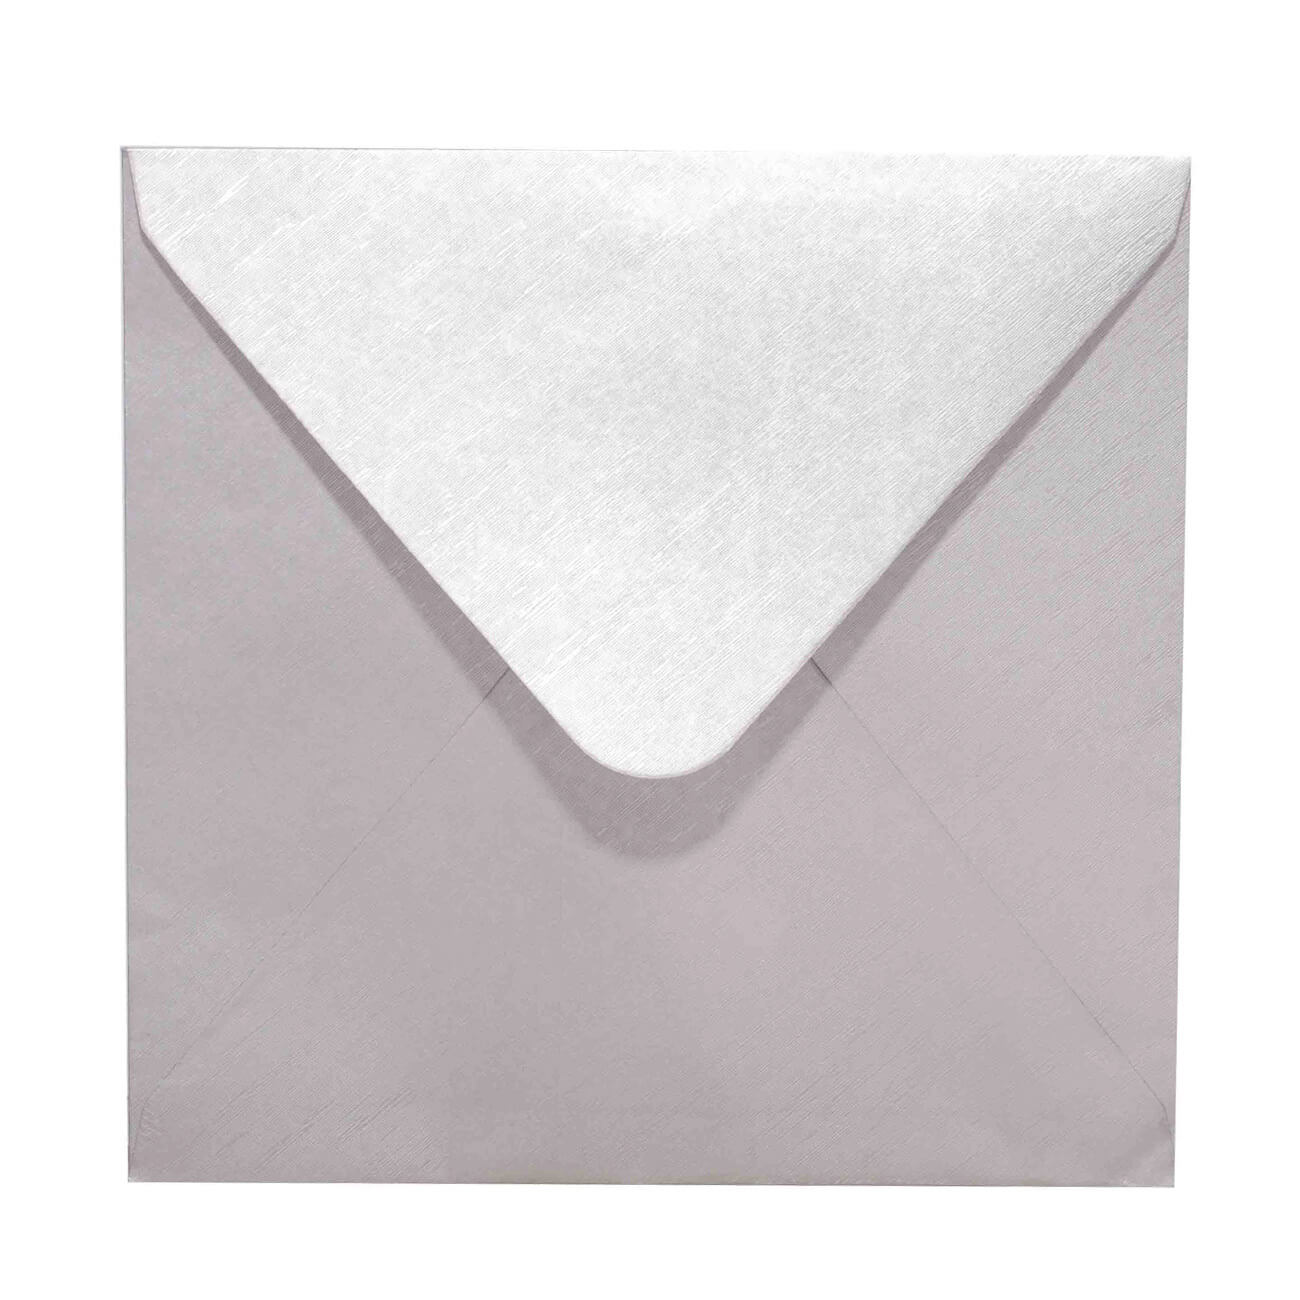 Конверт подарочный, 15 см, бумага, квадратный, серебристый, Congrats изображение № 1